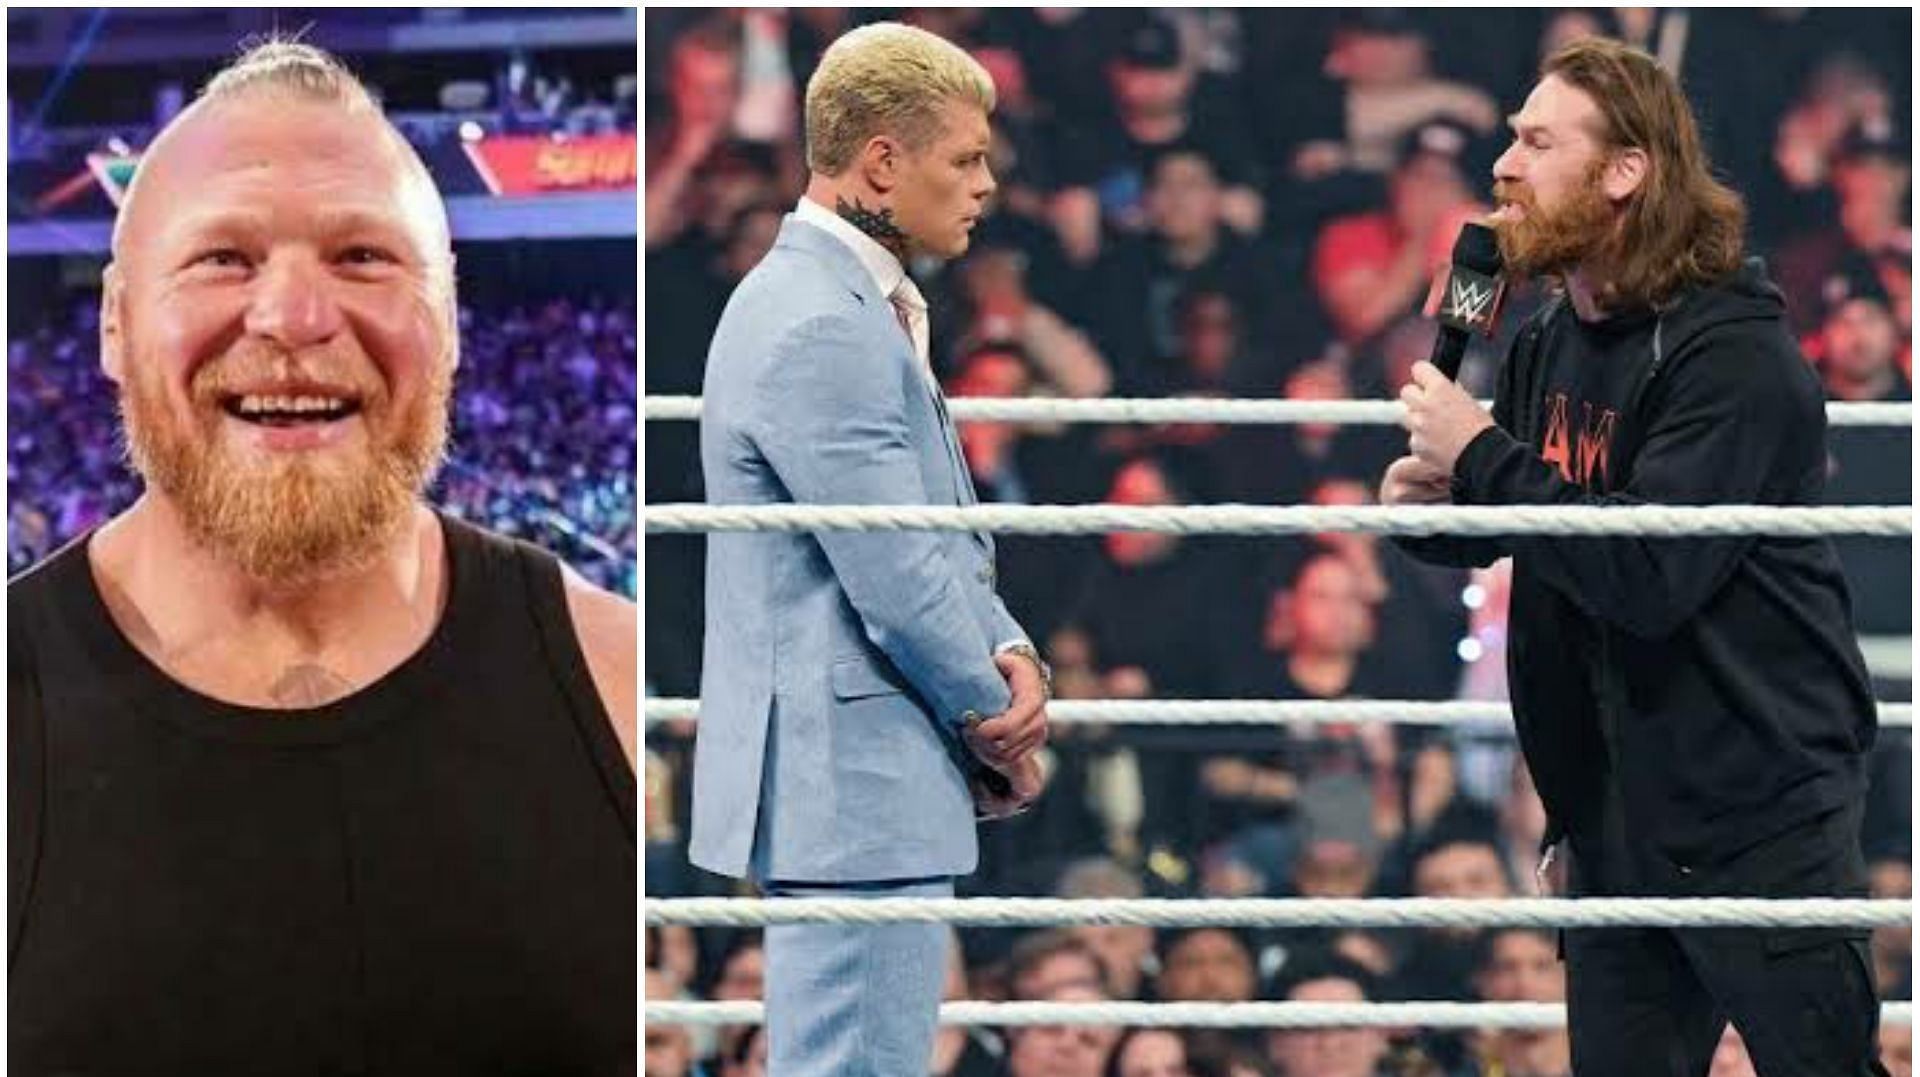 Cody Rhodes will headline his first WrestleMania